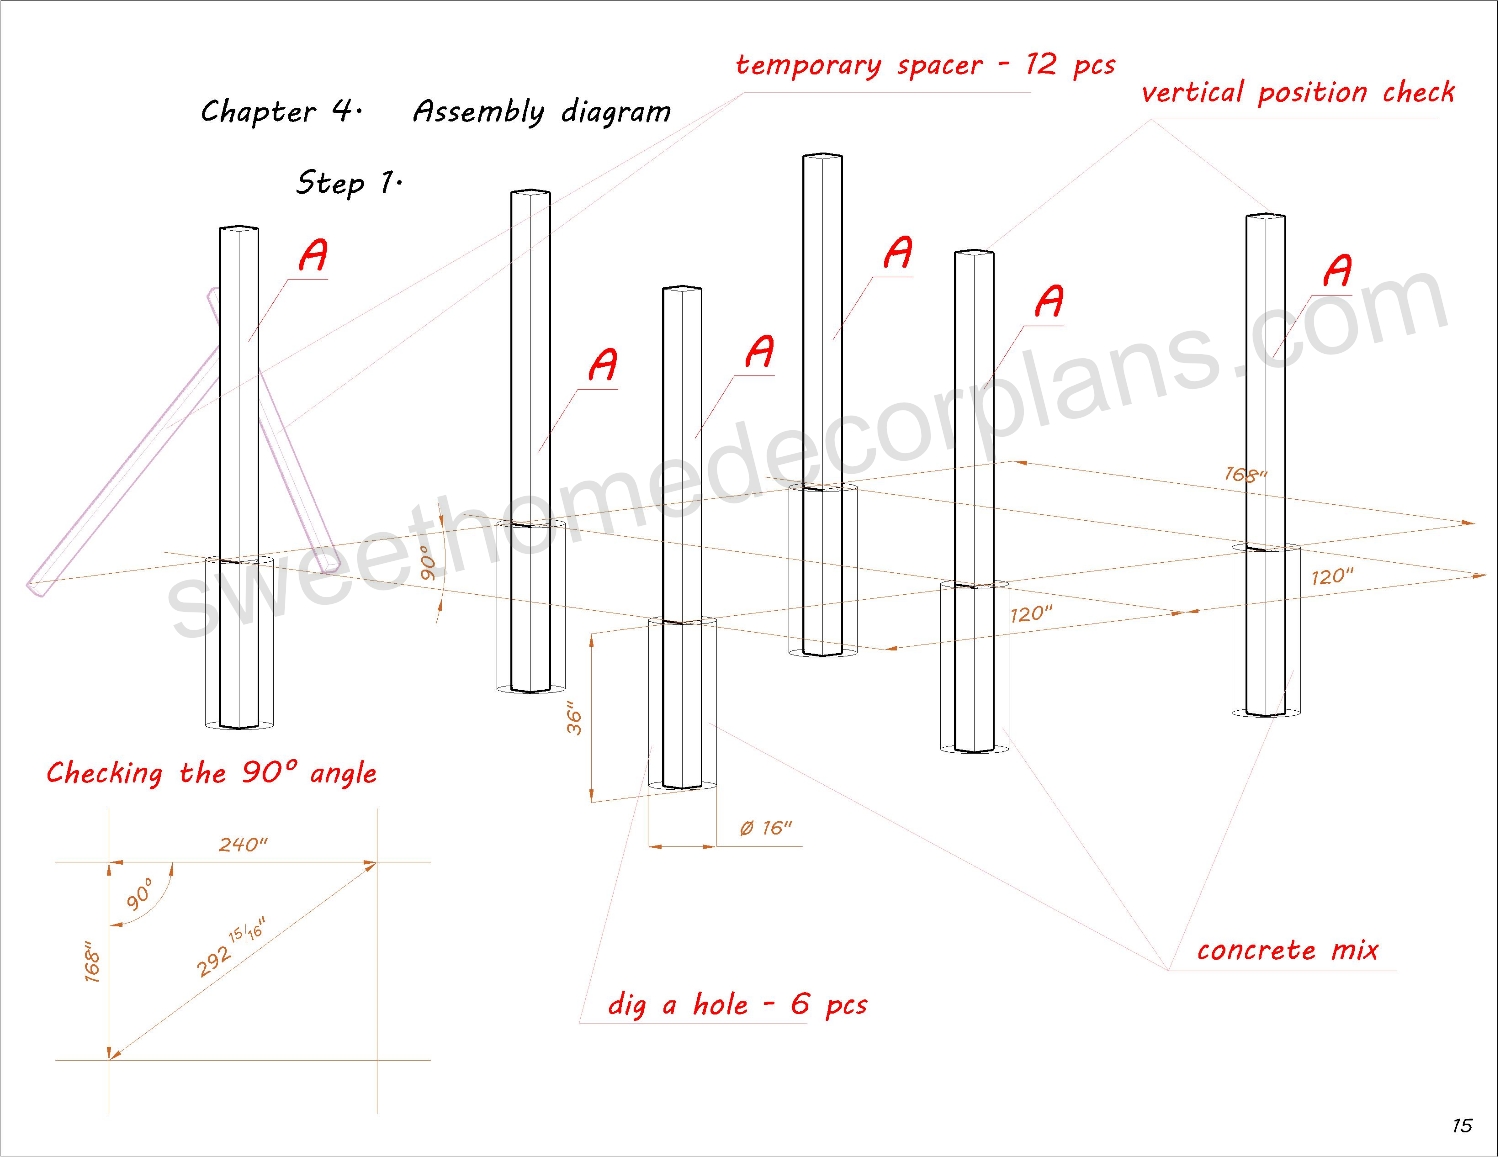 Assembly-diagram-wooden-14-х-20-gable-pavilion-plans-in-pdf-for-diy